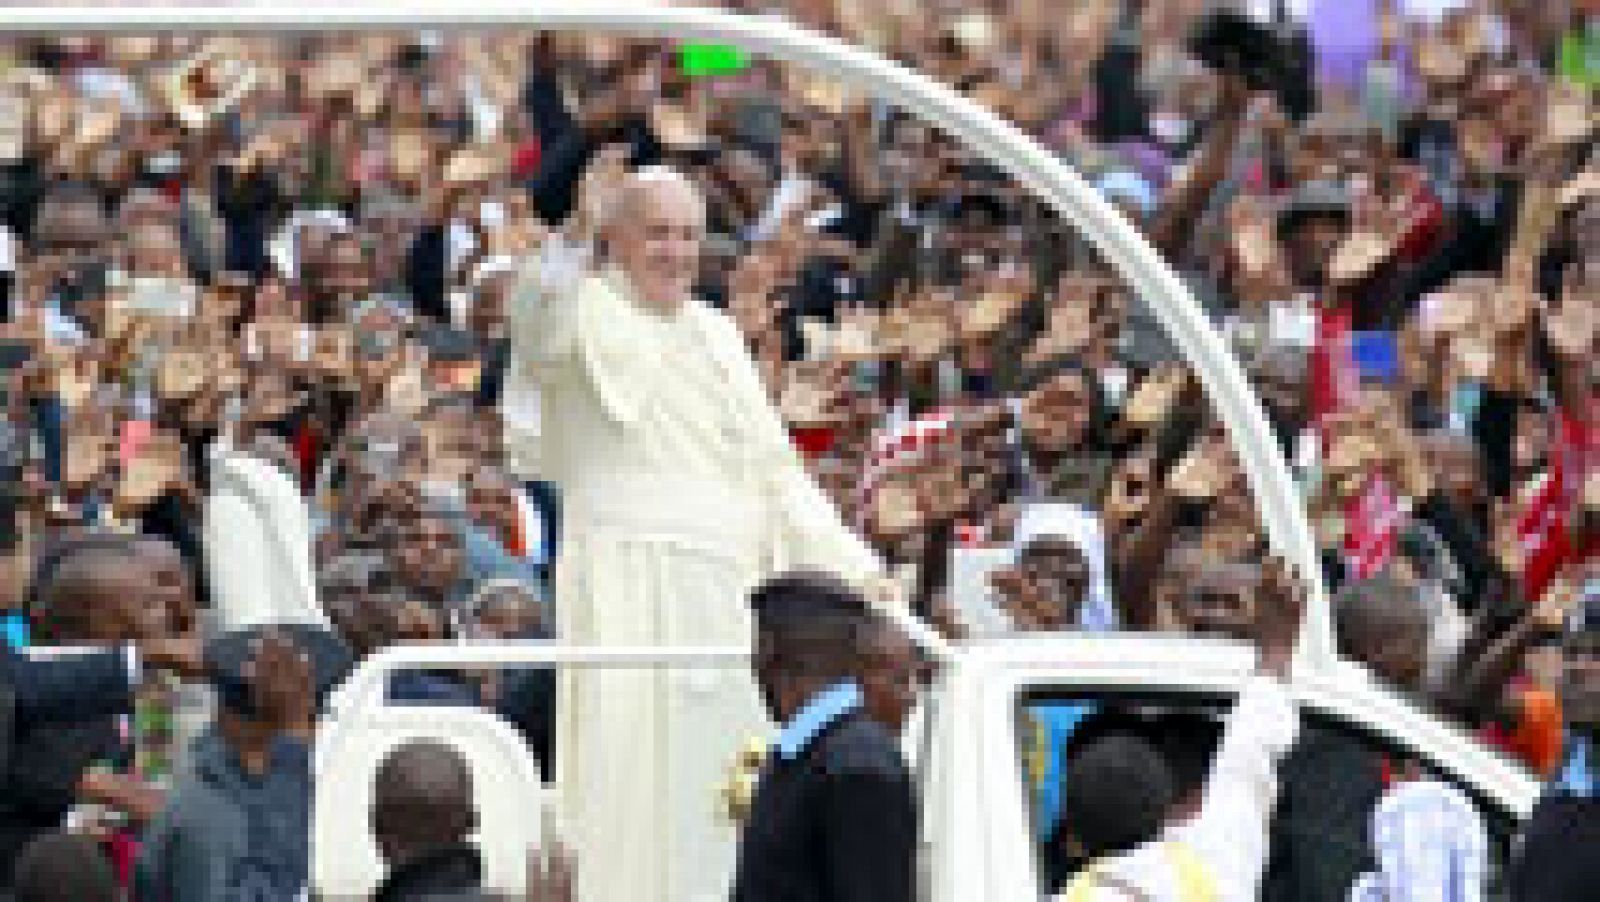 El papa pide acabar con la "arrogancia" de los hombres que maltratan a las mujeres en una misa multitudianaria en Kenia